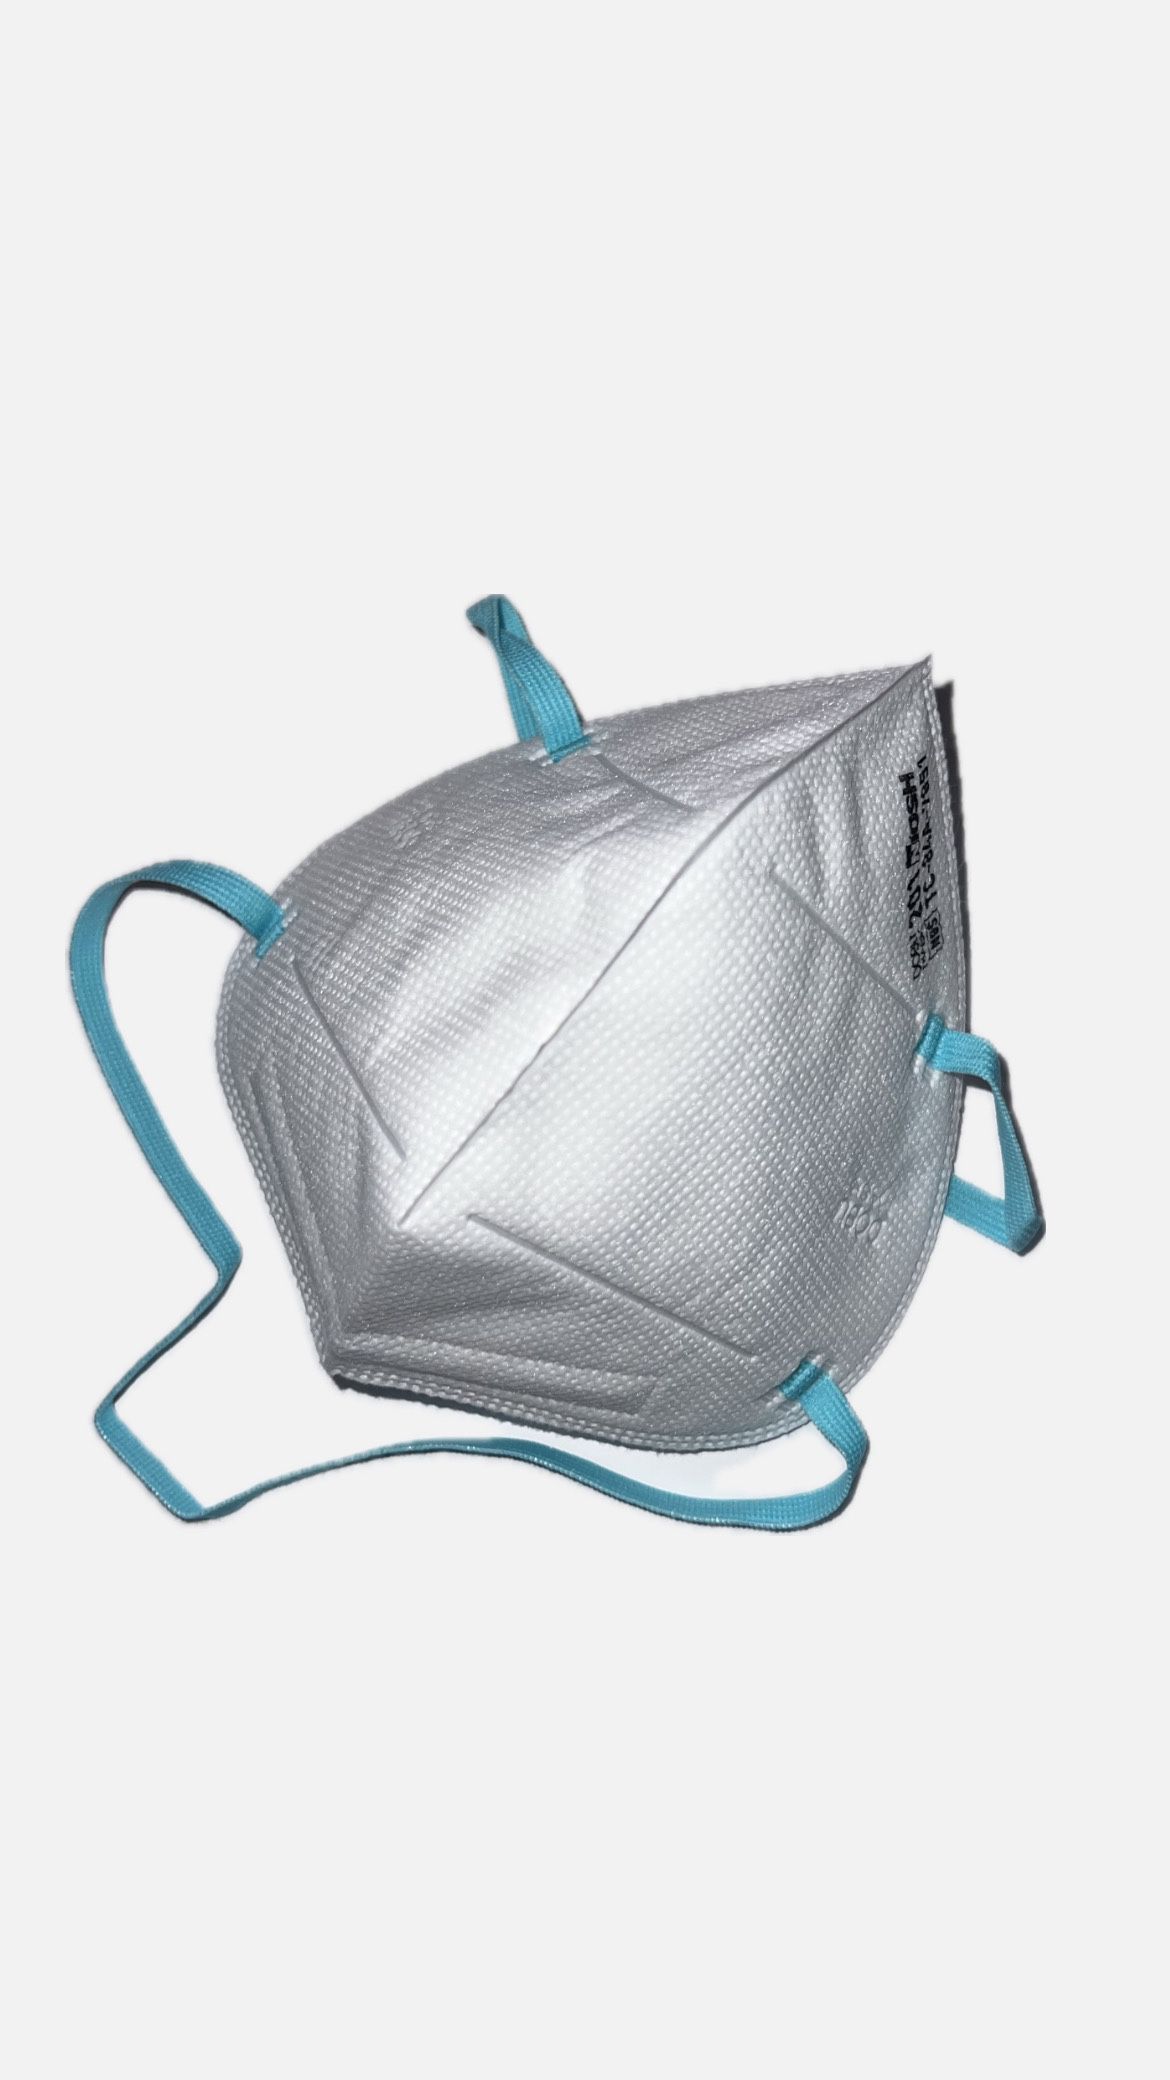 Dobu Mask N95 Approved Respirator - Case of 100 Masks